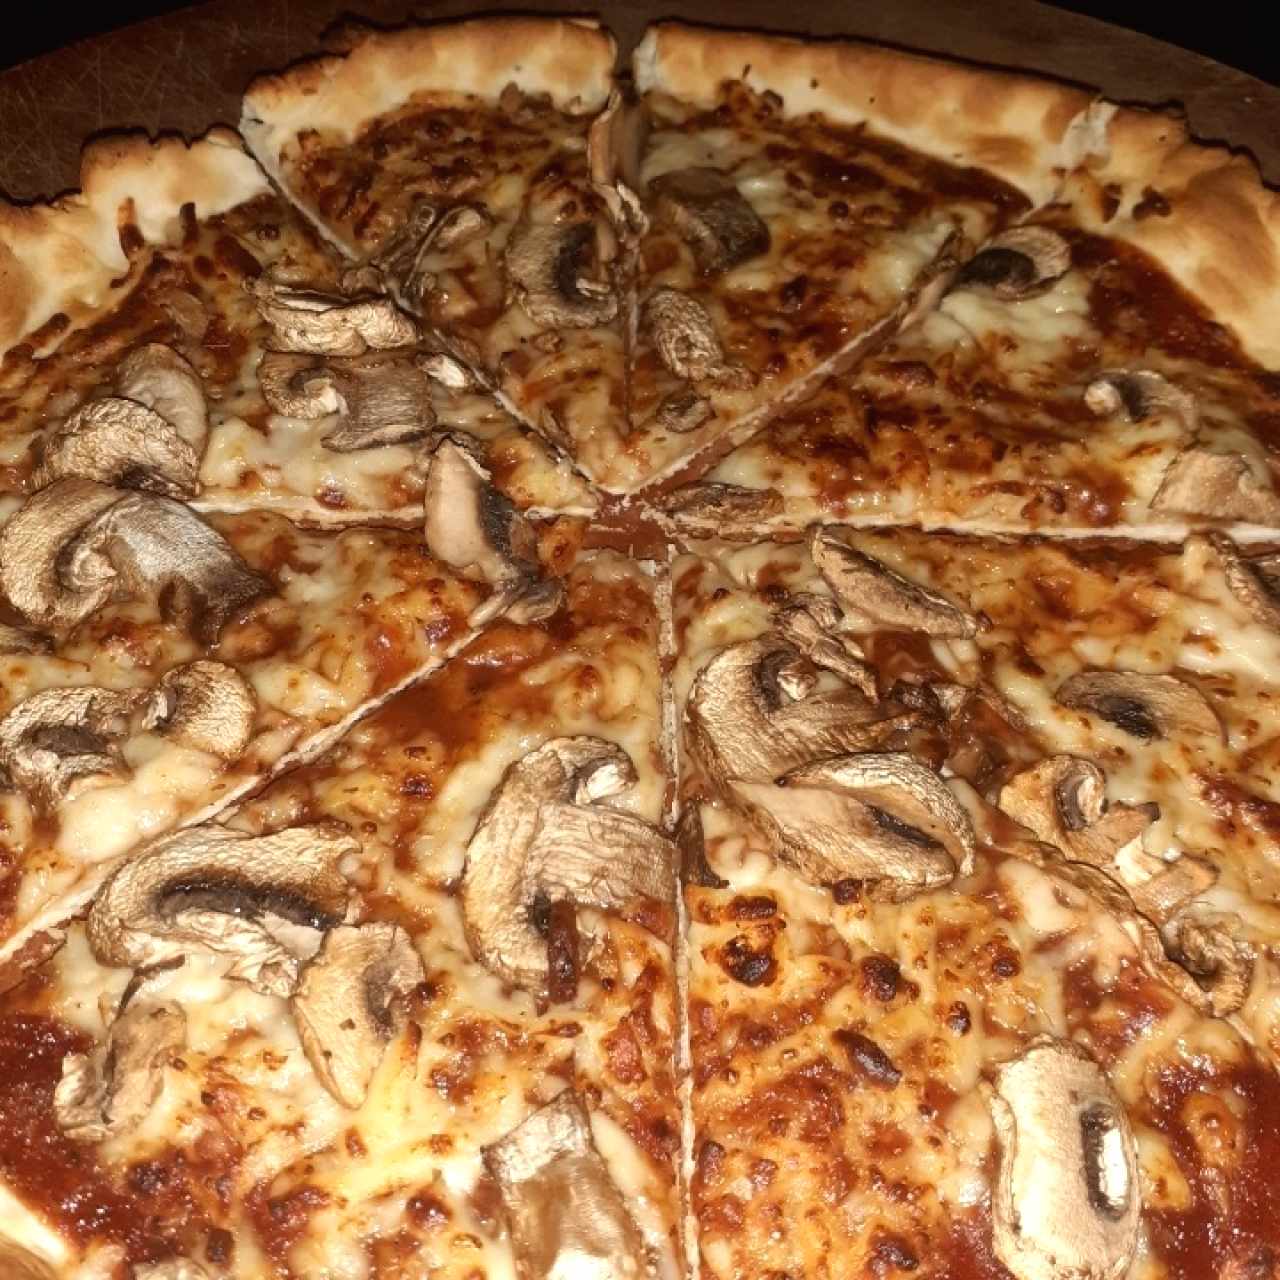 Pizza de 9" con masa delgada y extra de champiñones